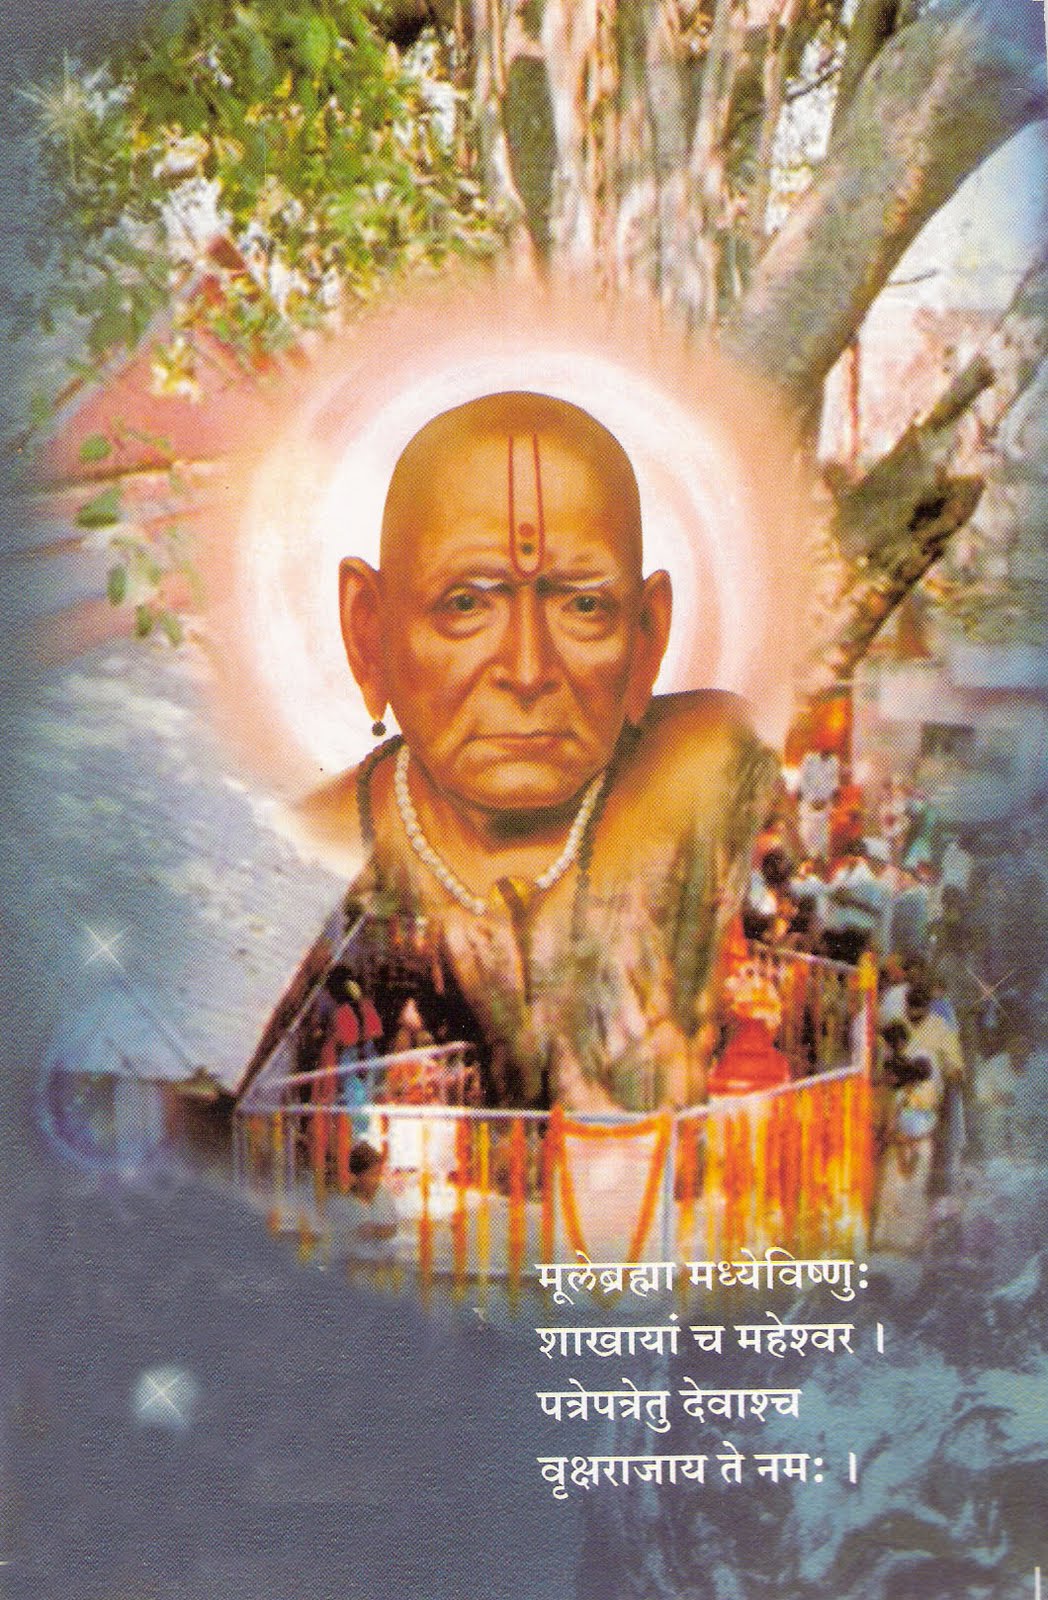 Shri Swami Samarth: Shri Swami Samarth